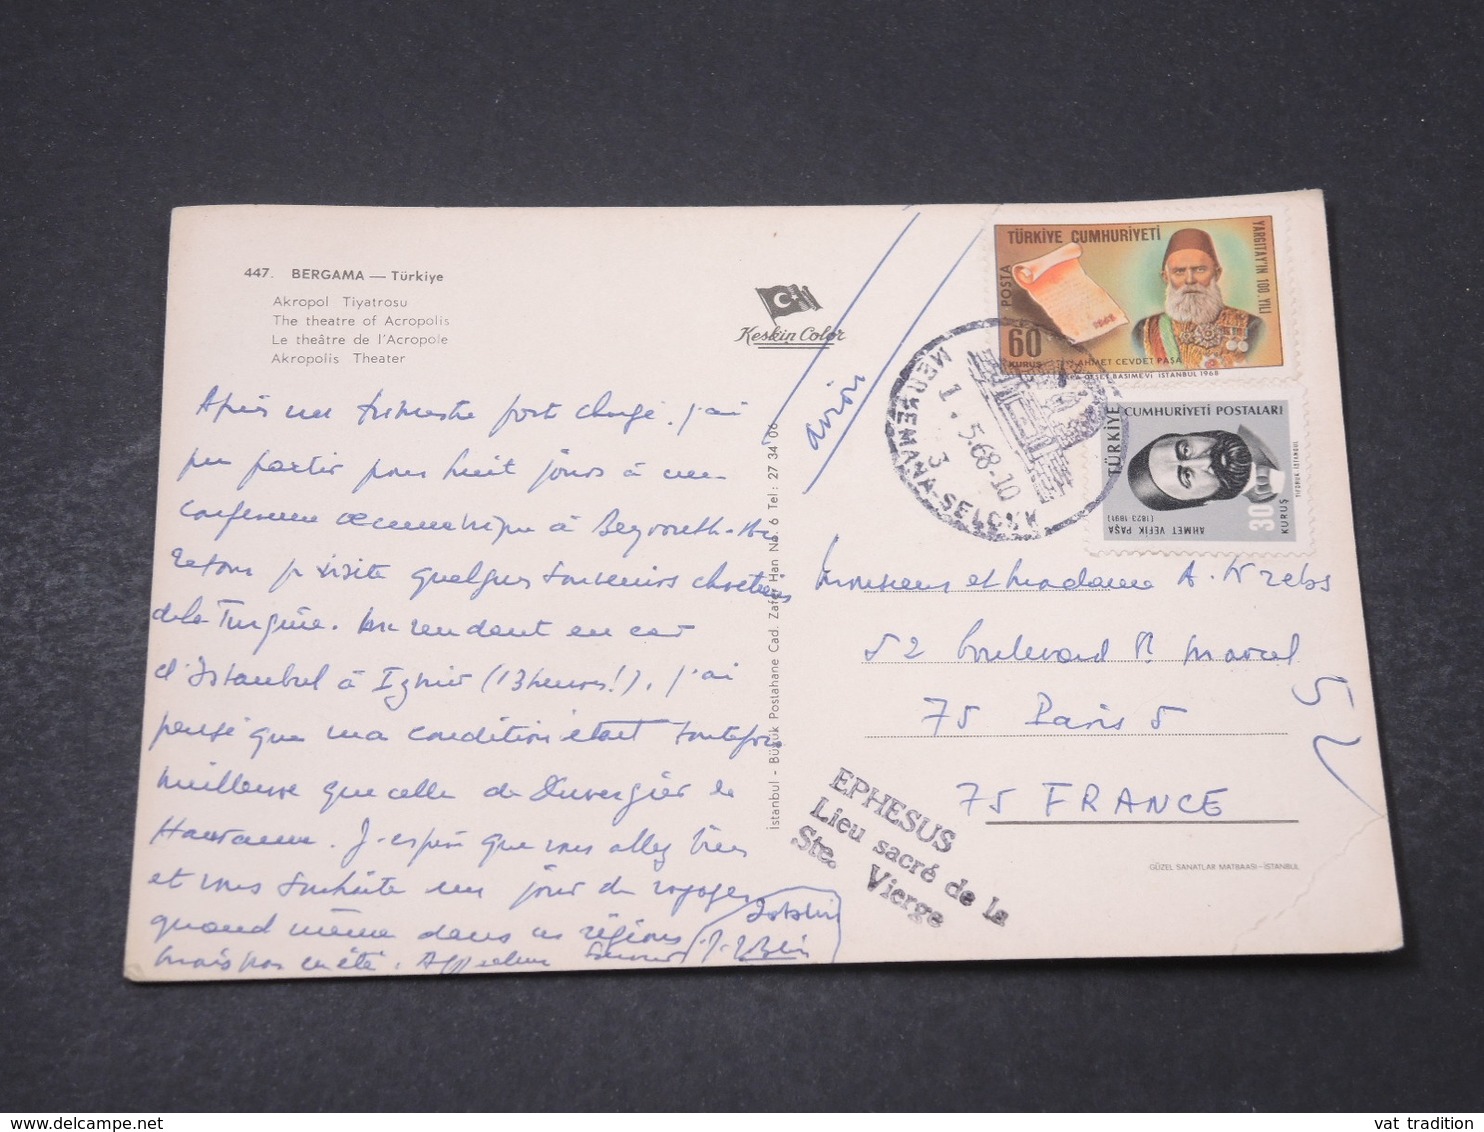 TURQUIE - Affranchissement De Bergama Sur Carte Postale Pour La France En 1968 - L 16701 - Covers & Documents